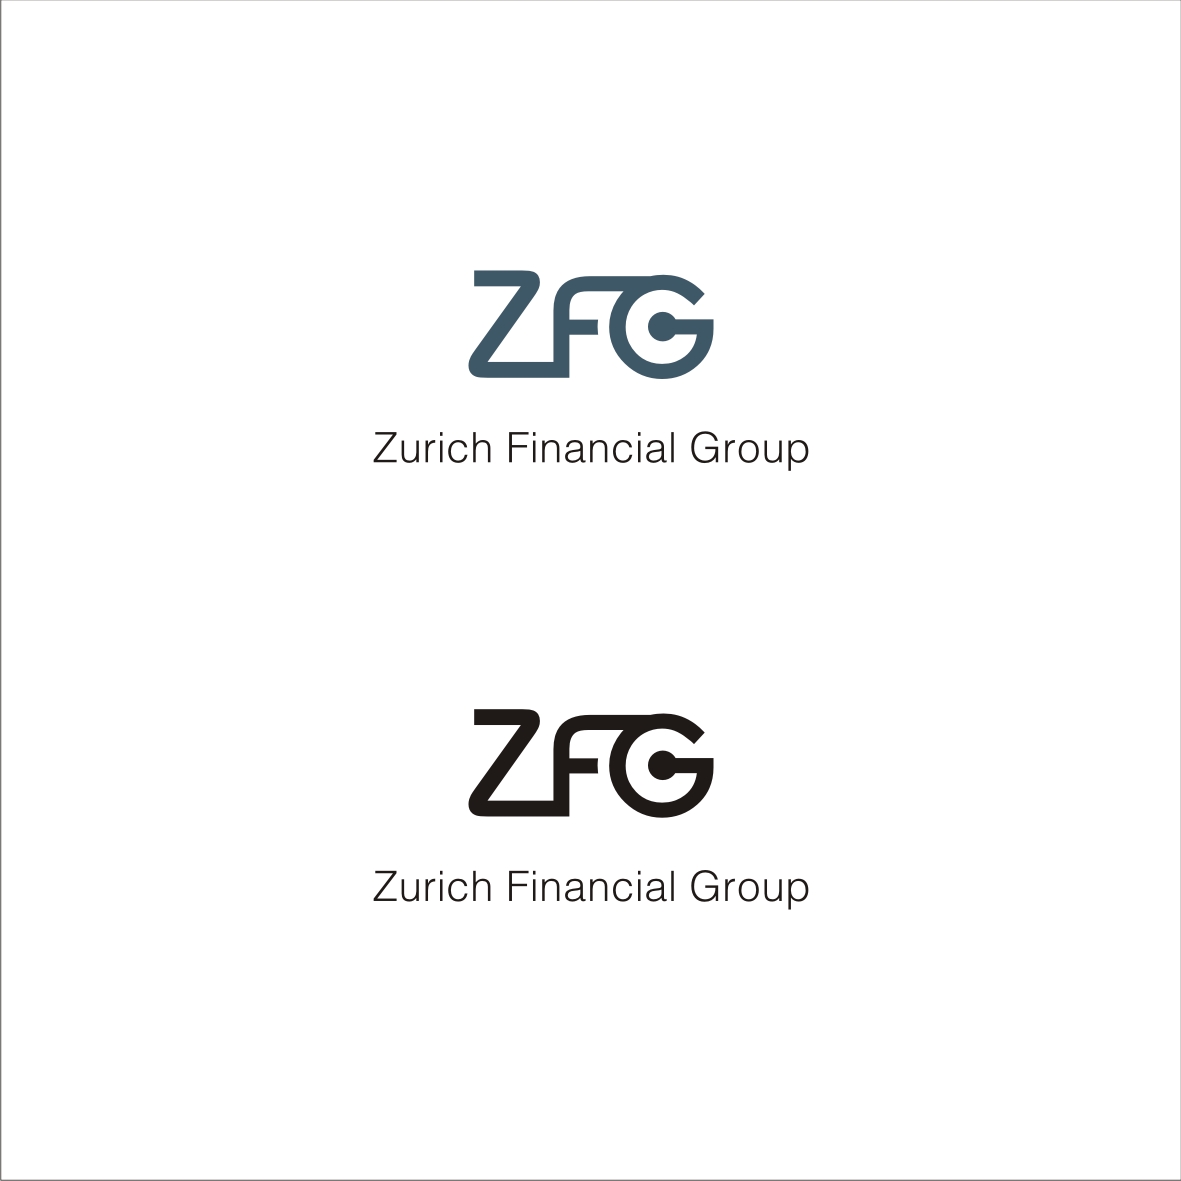 Zurich Financial Group